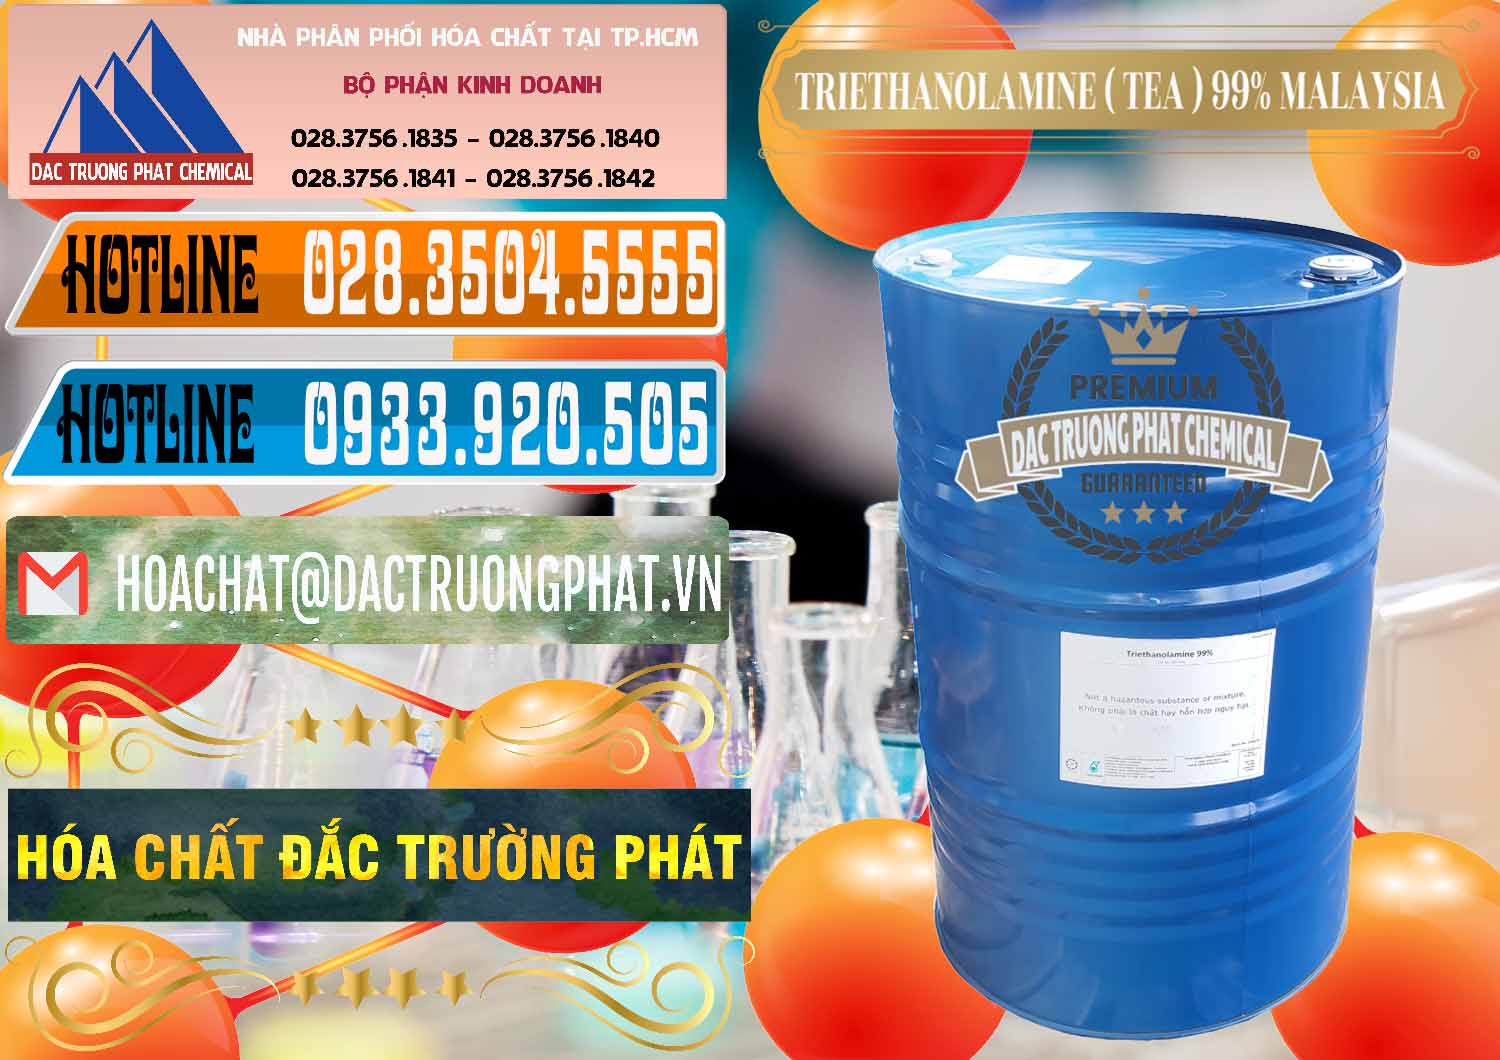 Cty chuyên bán ( phân phối ) TEA - Triethanolamine 99% Mã Lai Malaysia - 0323 - Công ty phân phối ( nhập khẩu ) hóa chất tại TP.HCM - stmp.net